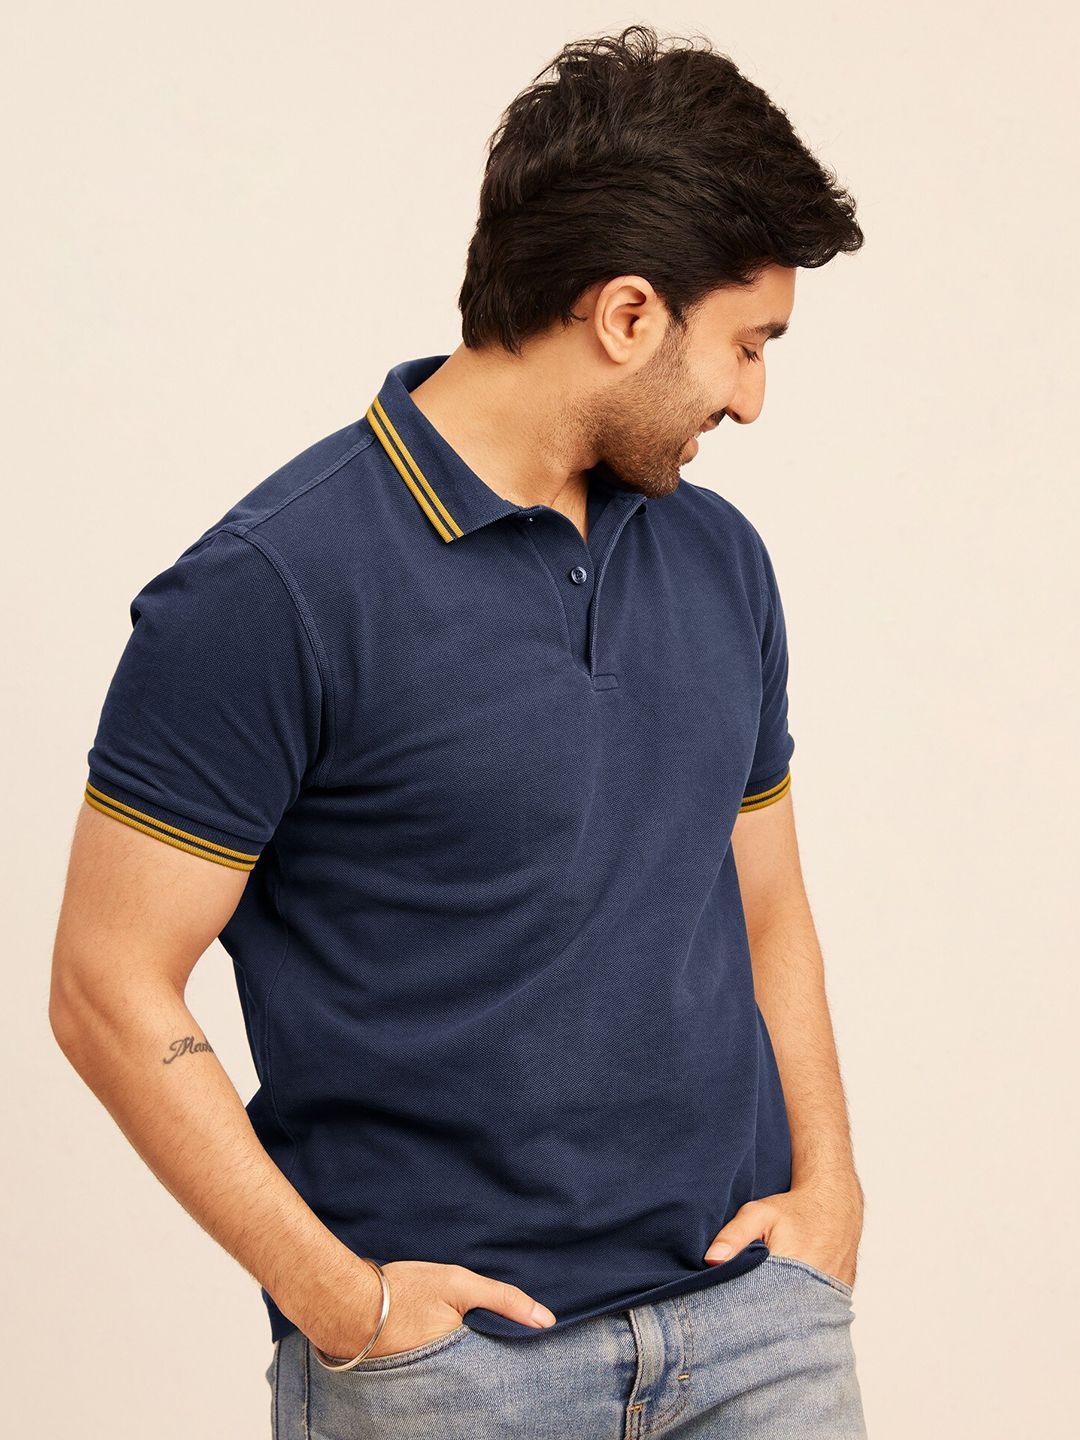 the-bleu-label-men-polo-collar-t-shirt